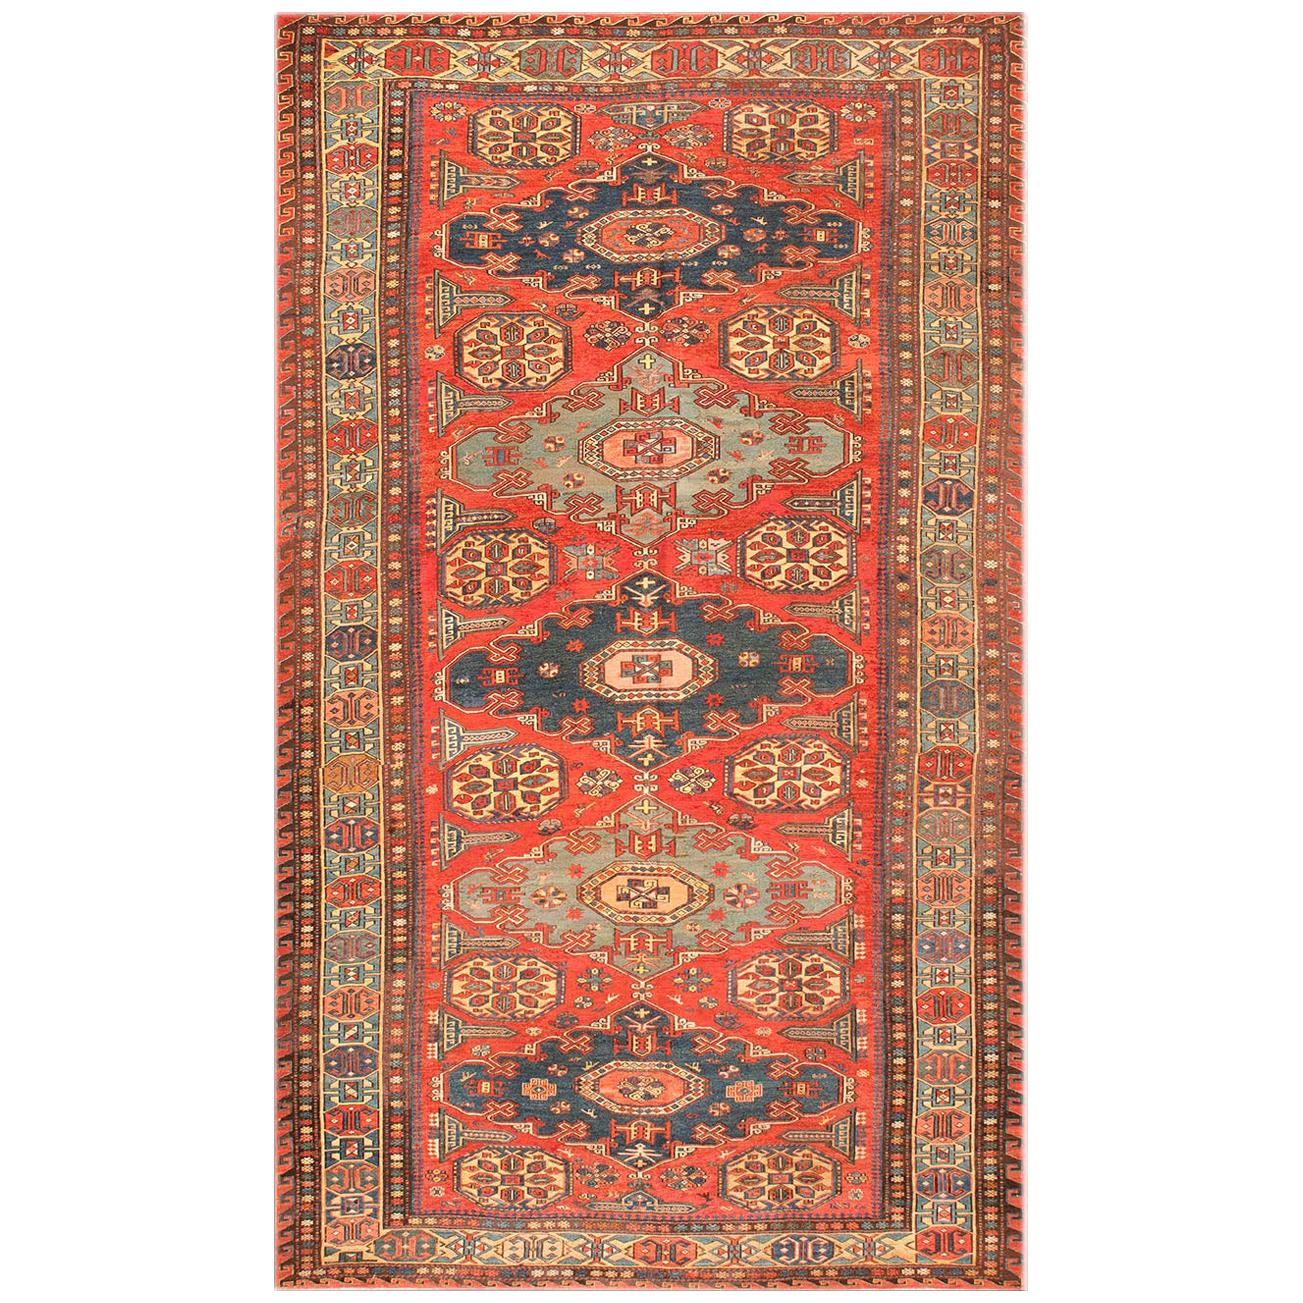 19th Century Caucasian Soumak Carpet ( 5' x 8'3" - 153 x 252 )